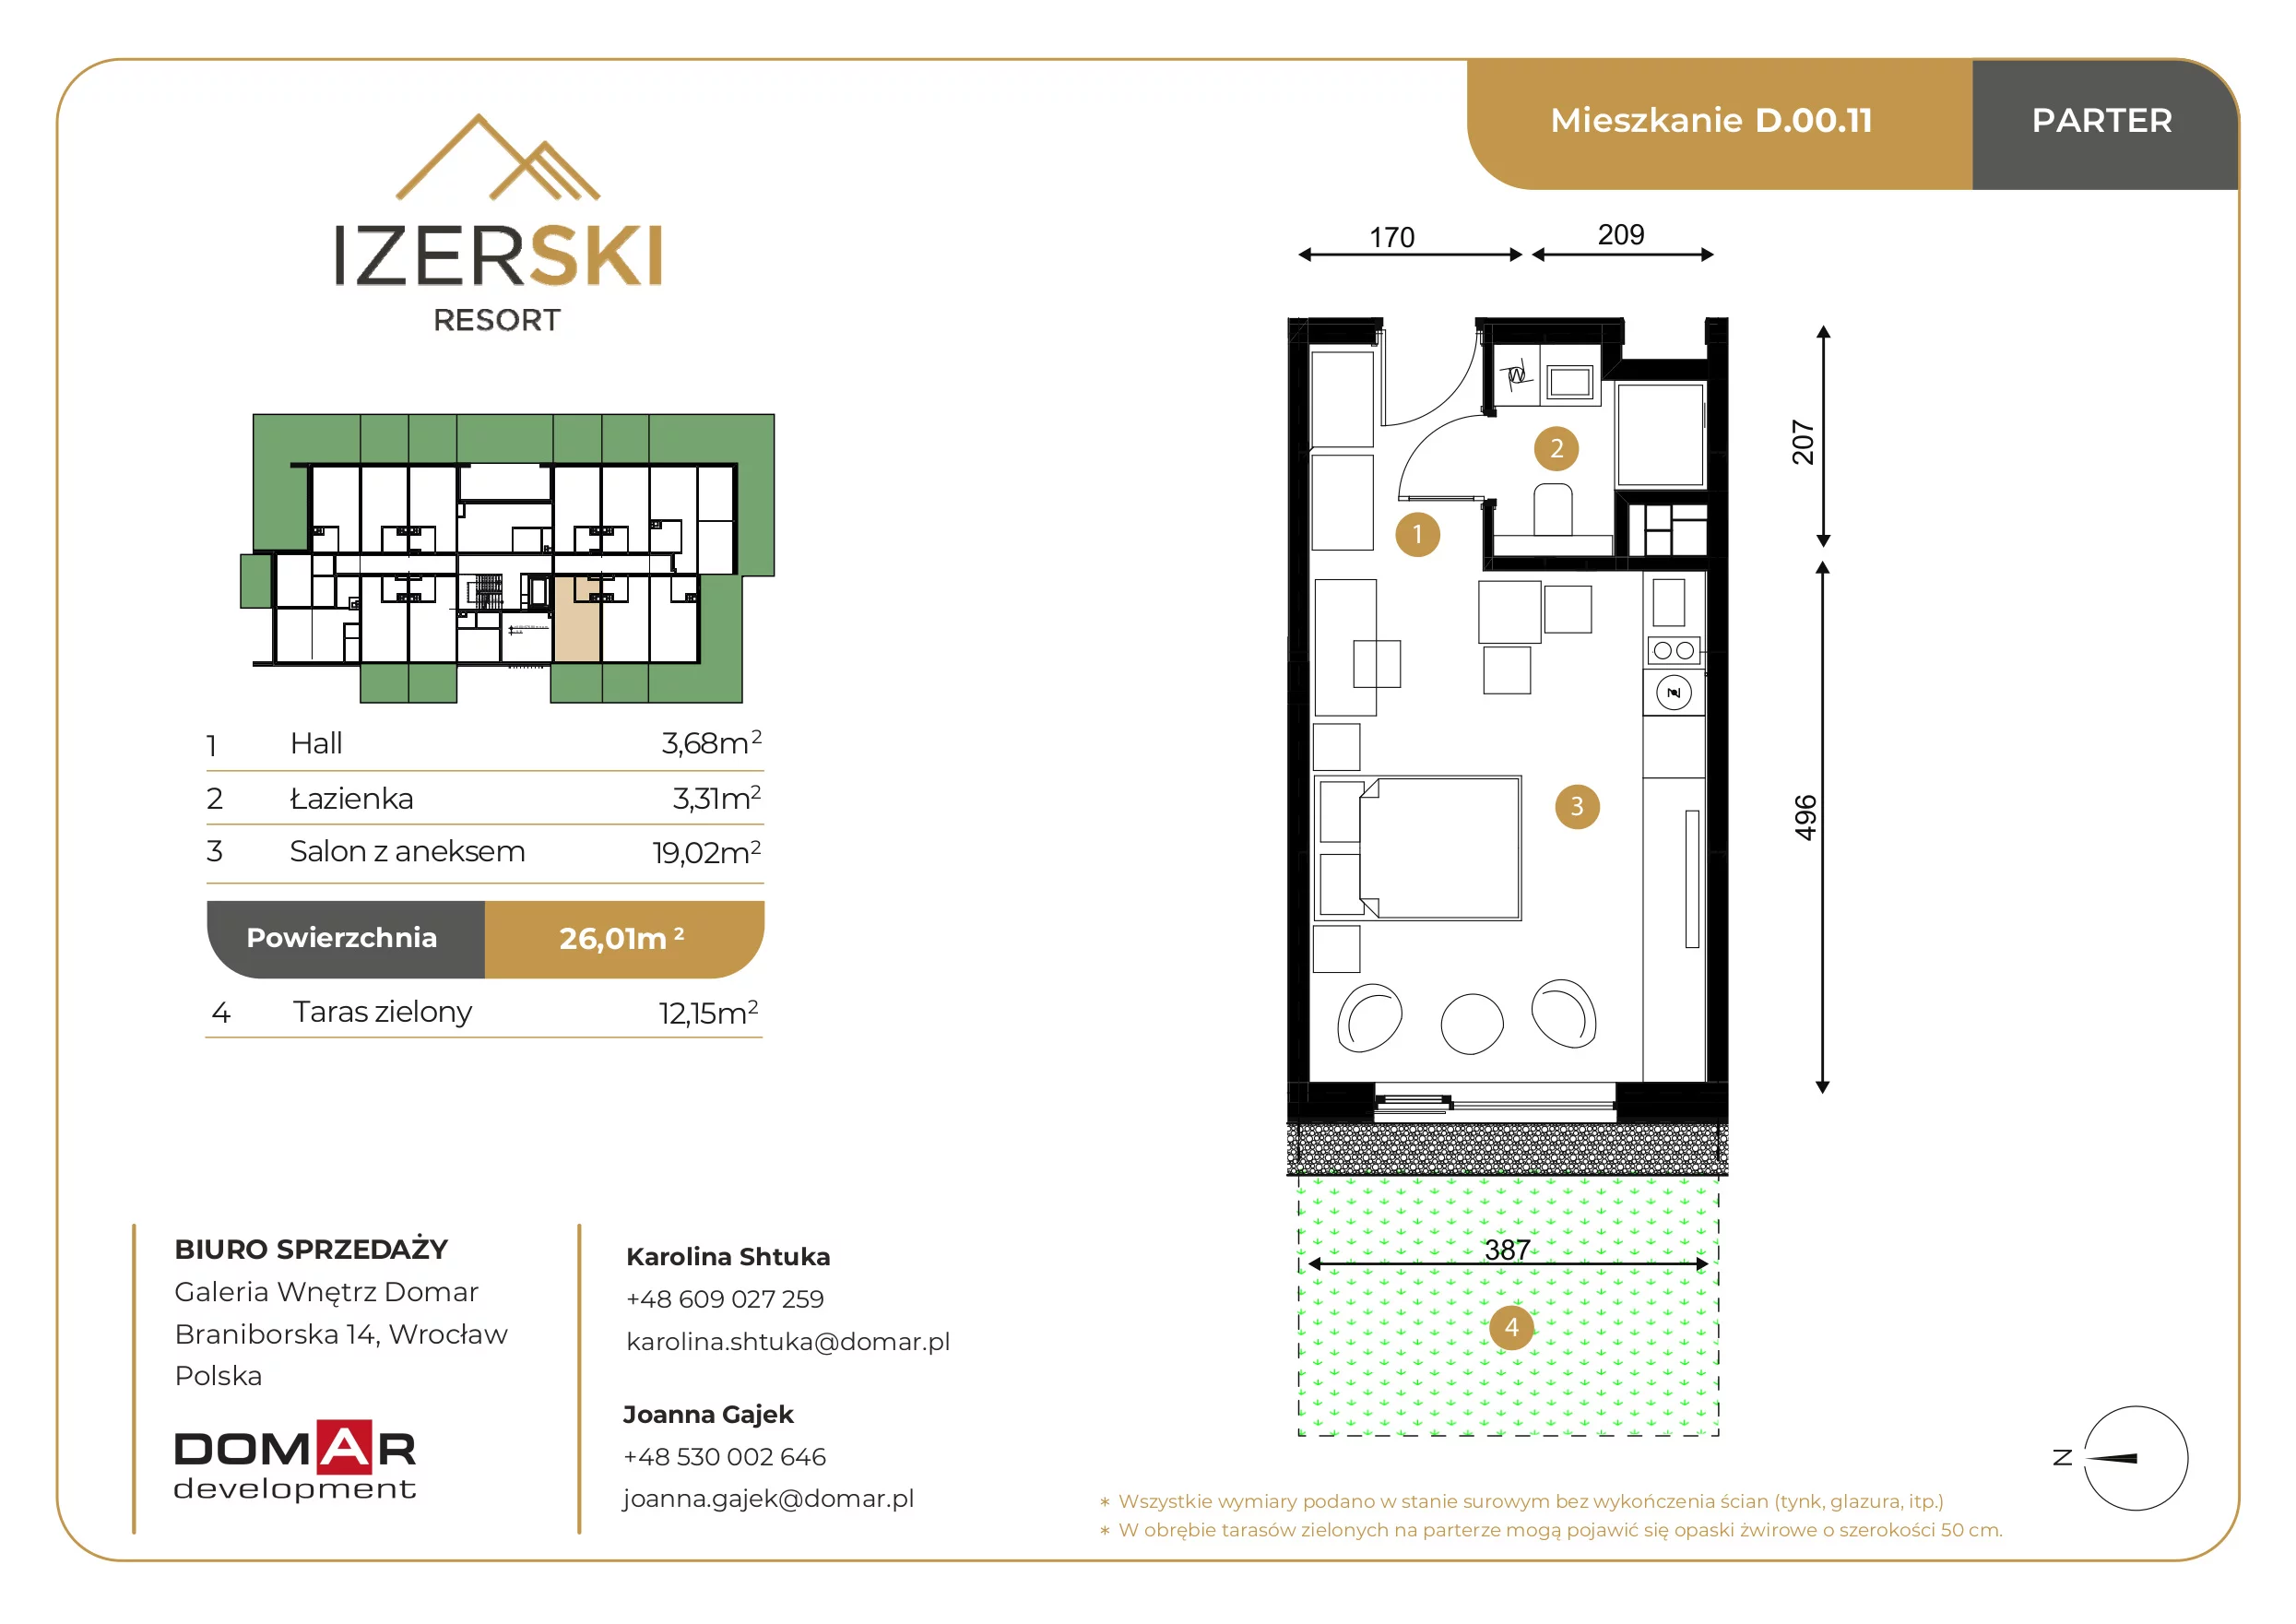 Apartament inwestycyjny 26,01 m², parter, oferta nr D.00.11, IzerSKI Resort, Świeradów-Zdrój, ul. Jana Kilińskiego 2